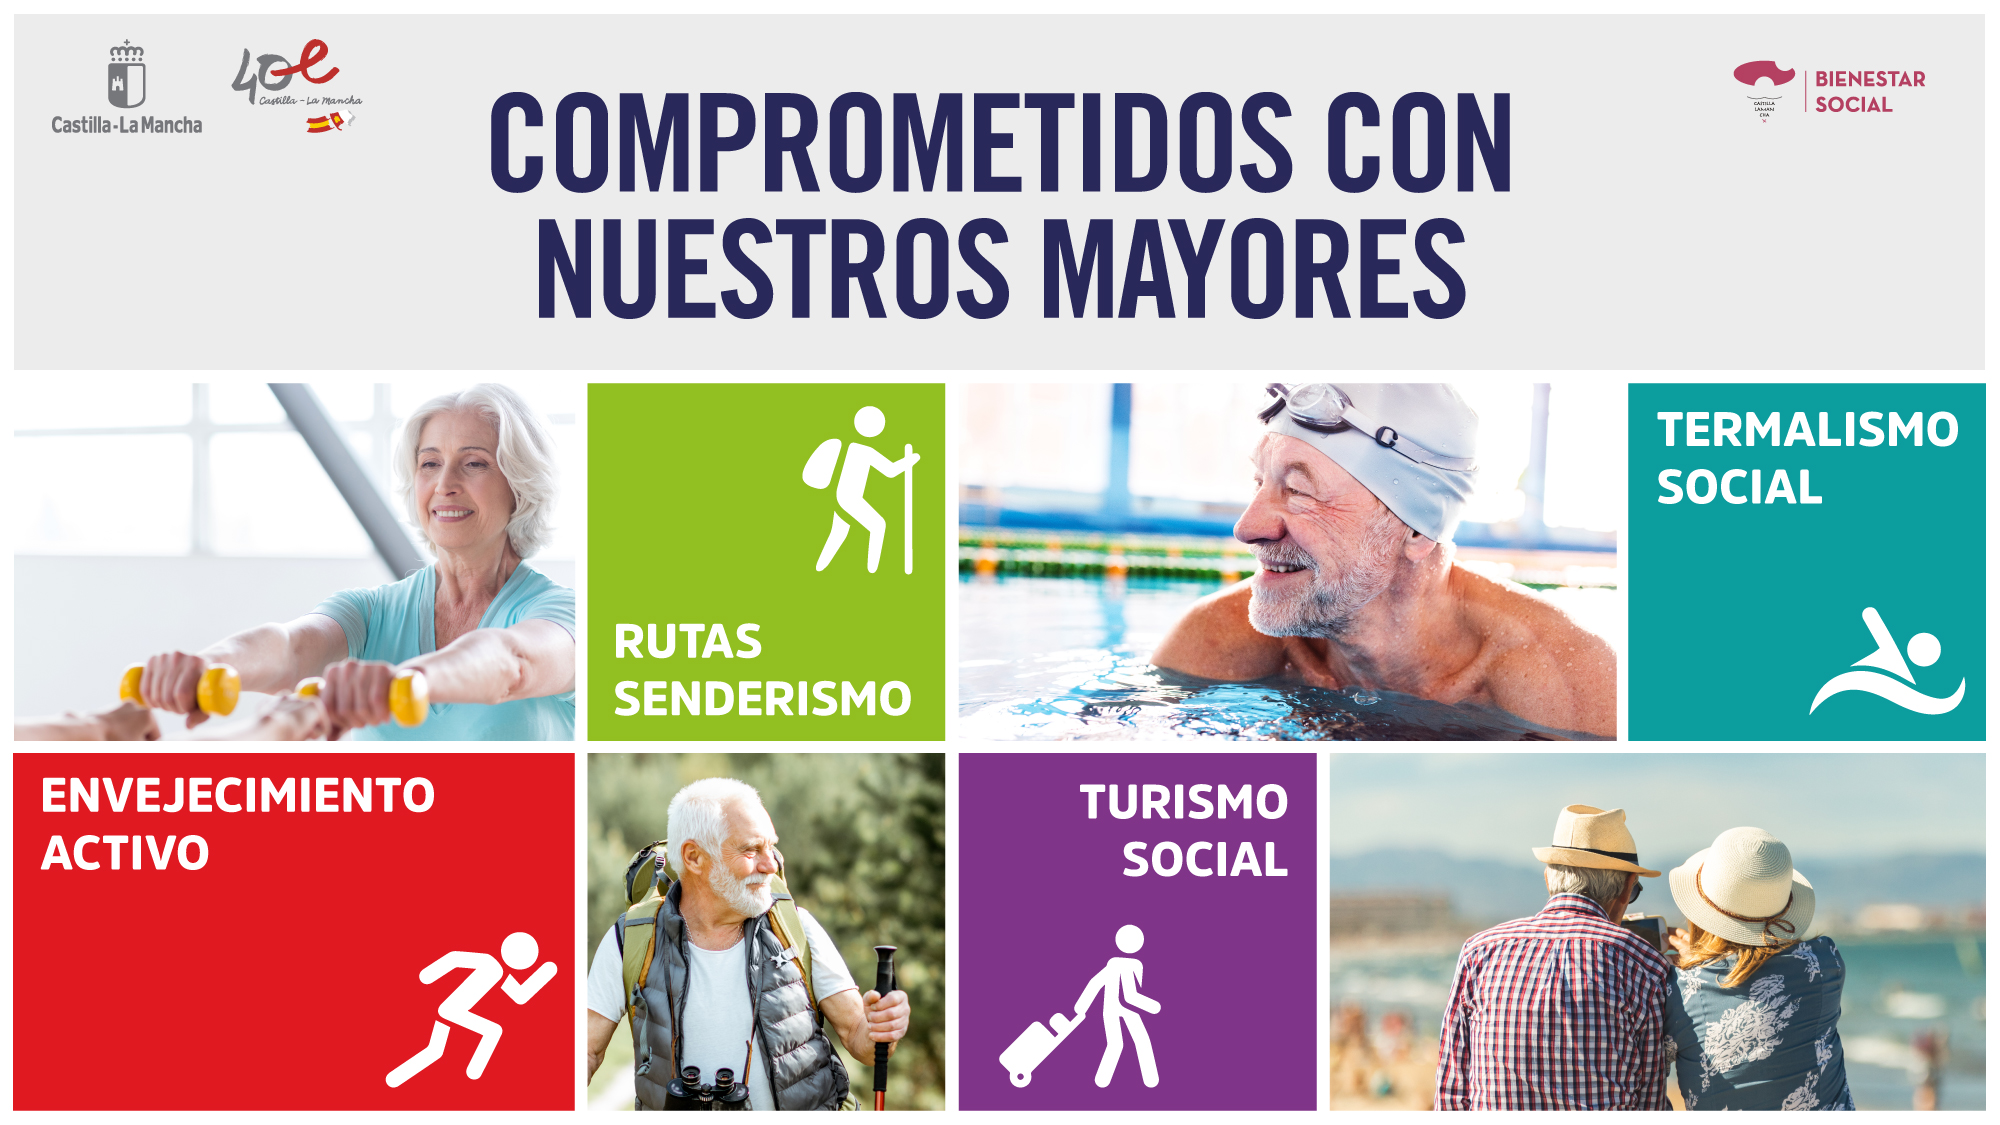 Campaña Envejecimiento Activo  –  Bienestar Social Castilla-La Mancha